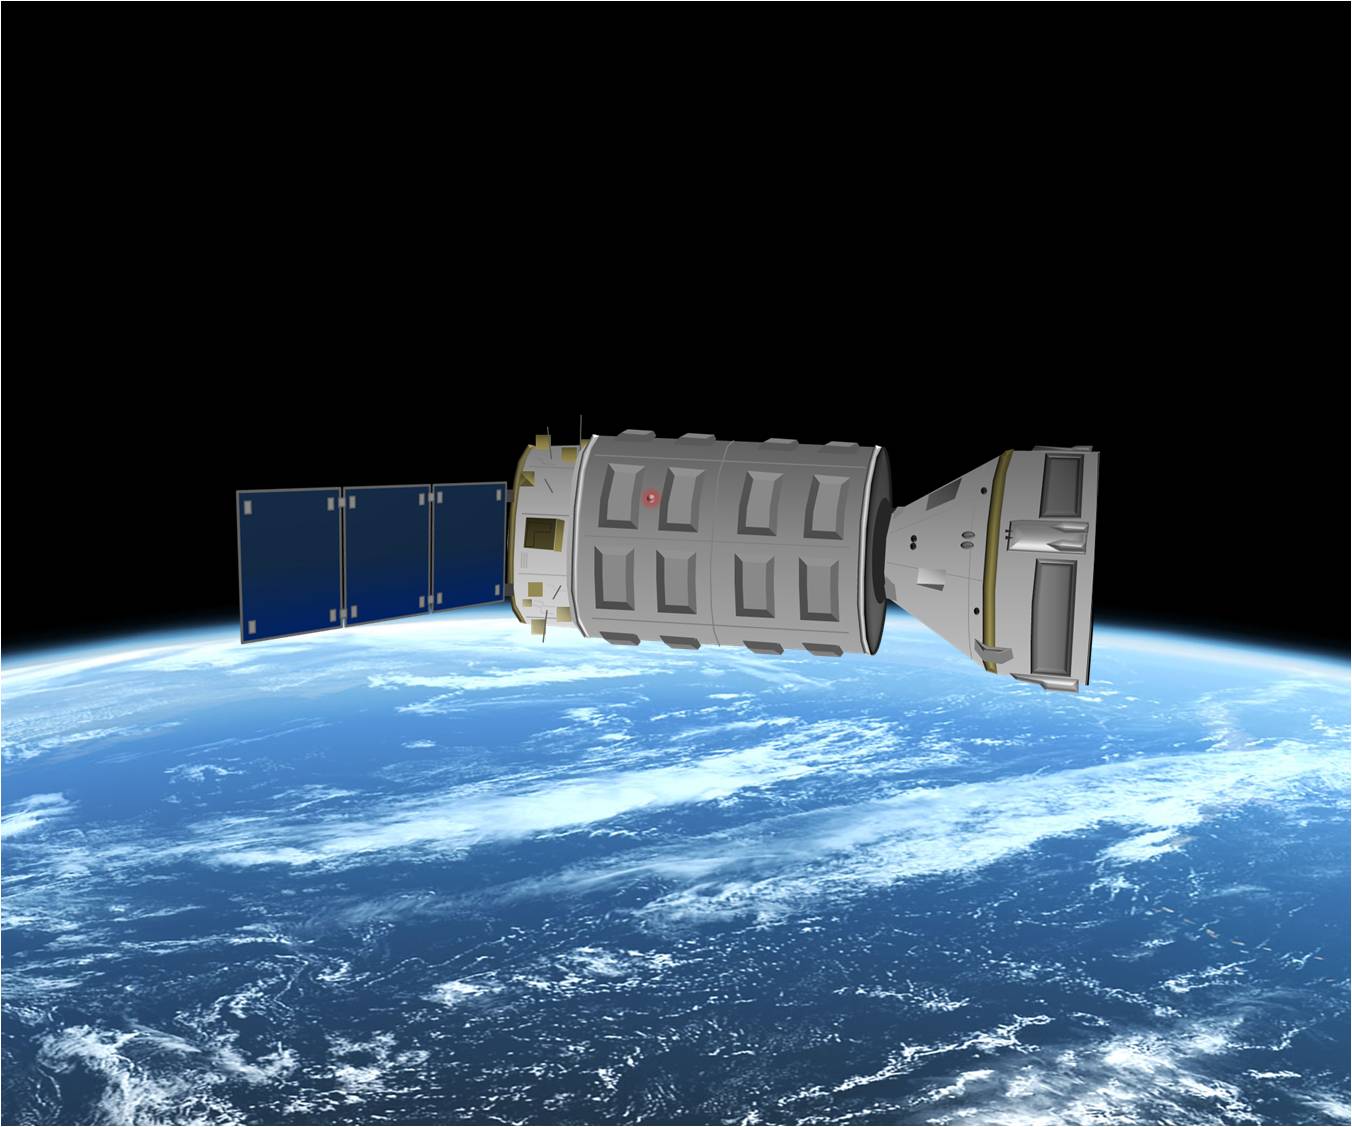 Jól kivehető a Cygnus-rendszer: balra a Service Modul, középen a hosszú hengeres szállító egység, ennyi repül most, jobbra a majdani kabin űrhajósoknak